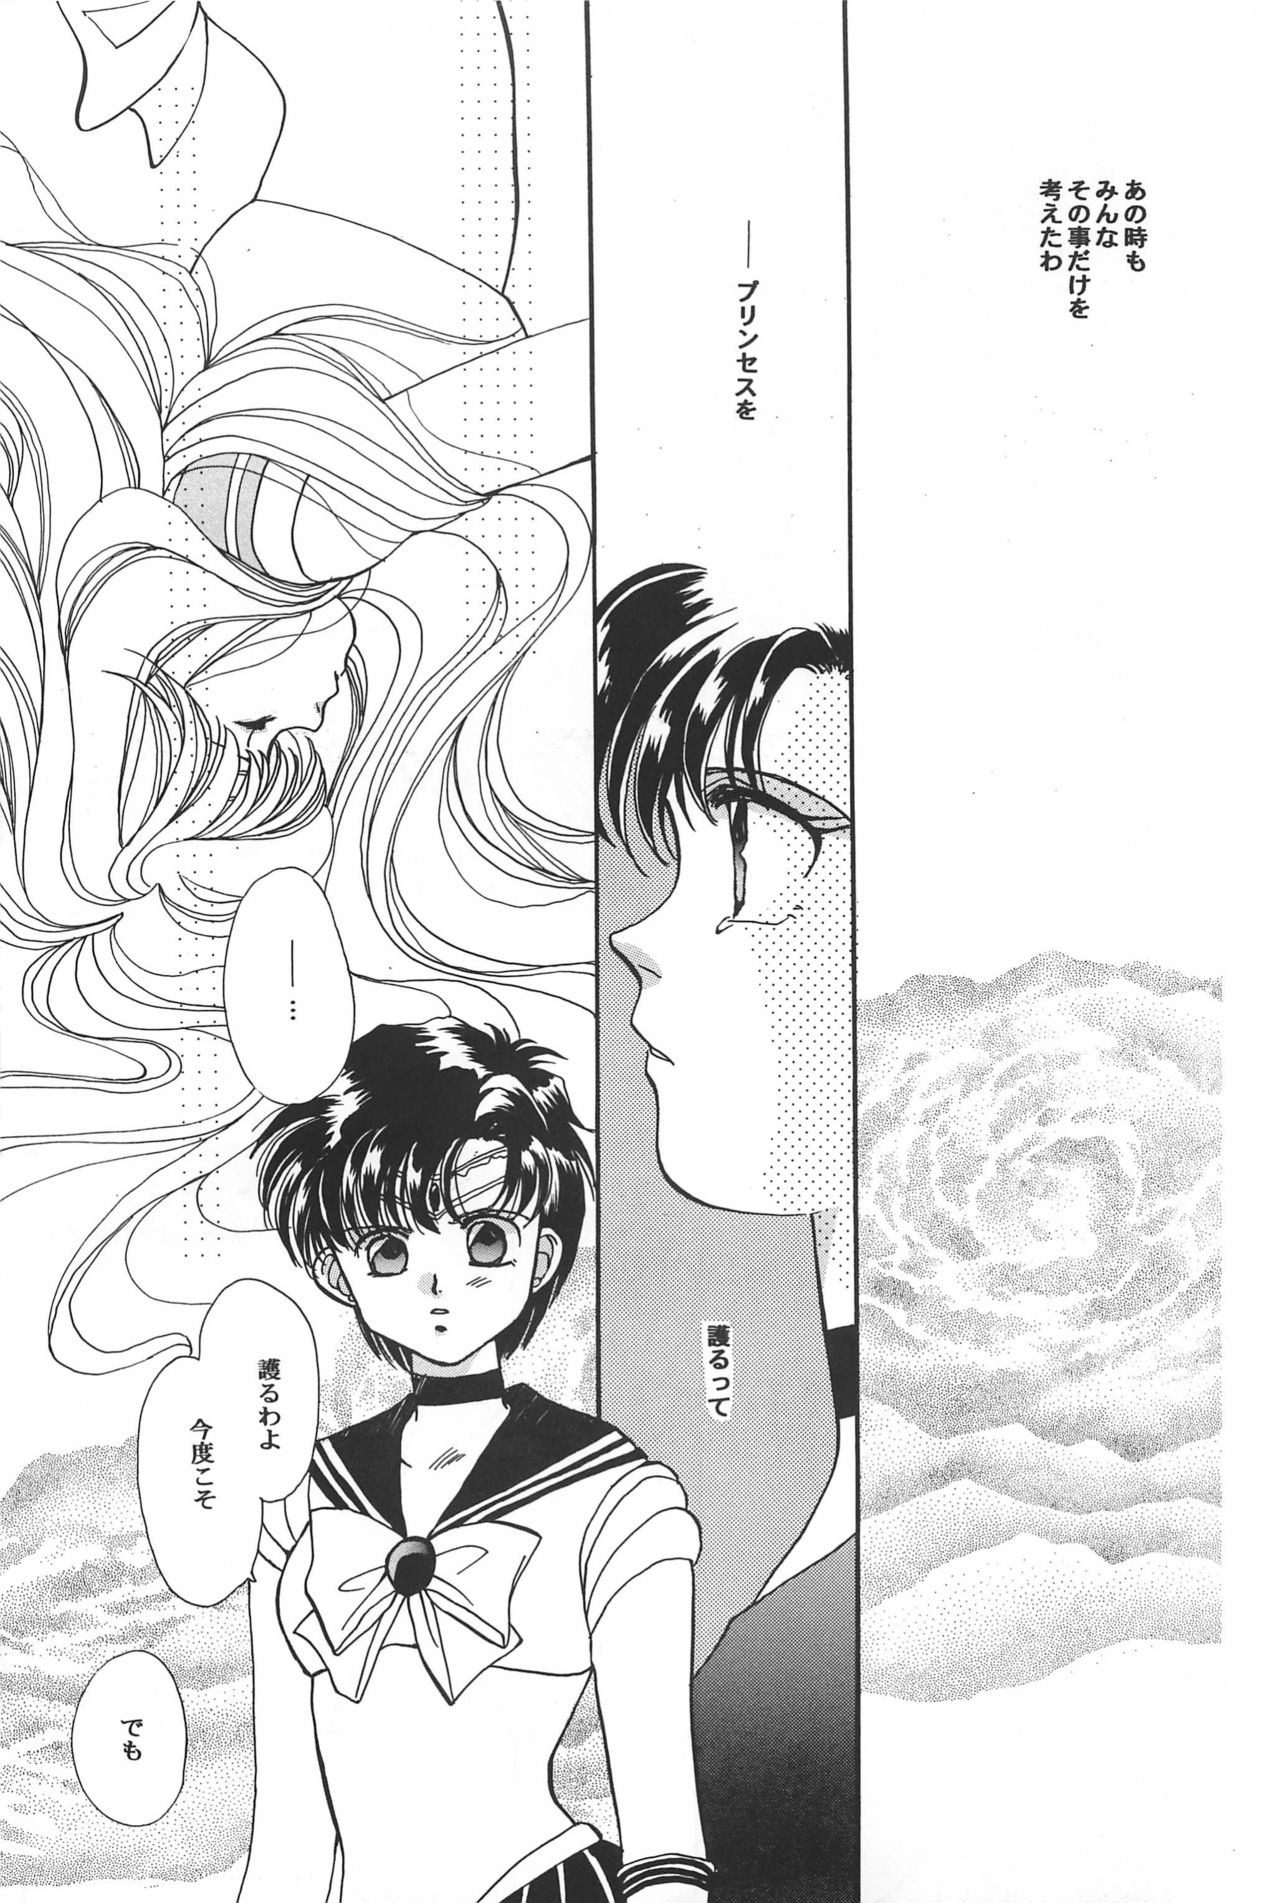 [Hello World (Muttri Moony)] Kaze no You ni Yume no You ni - Sailor Moon Collection (Sailor Moon) 144